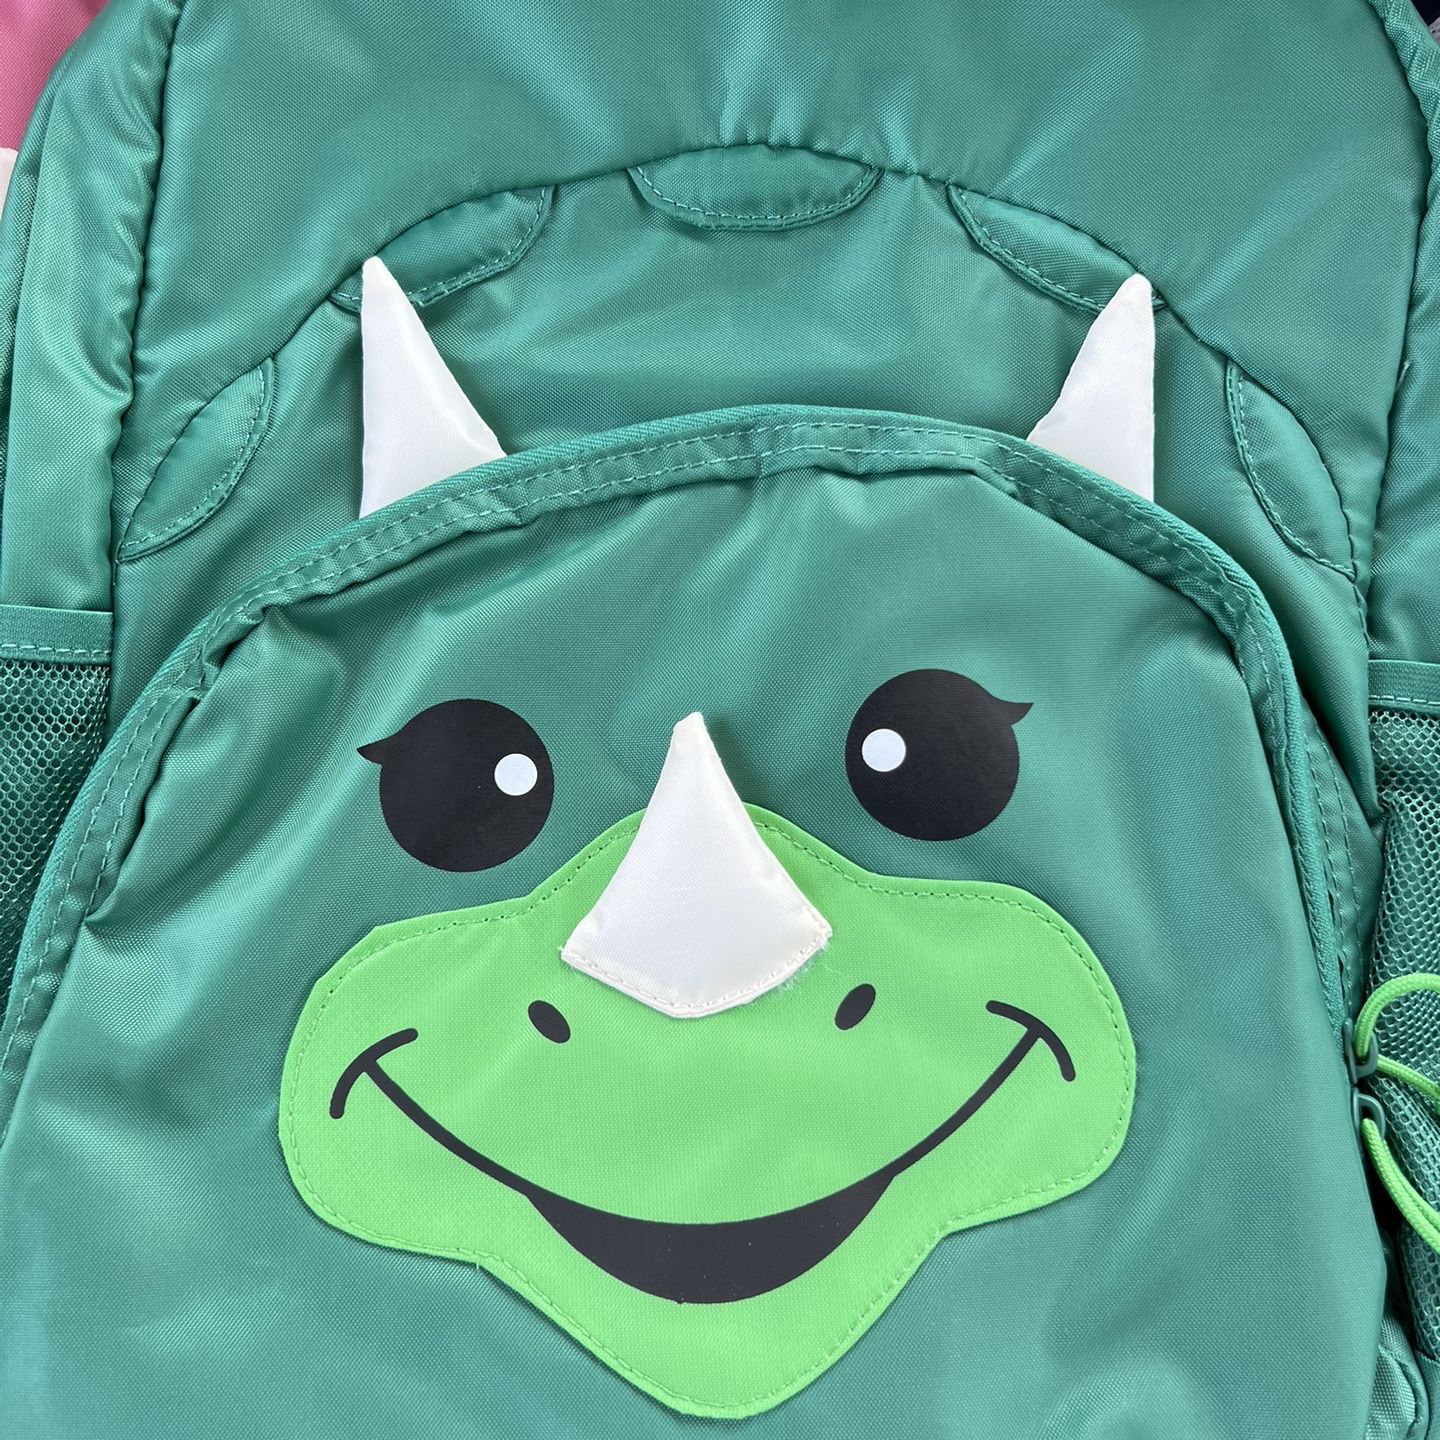 Izzie the Llama Kids' Backpack